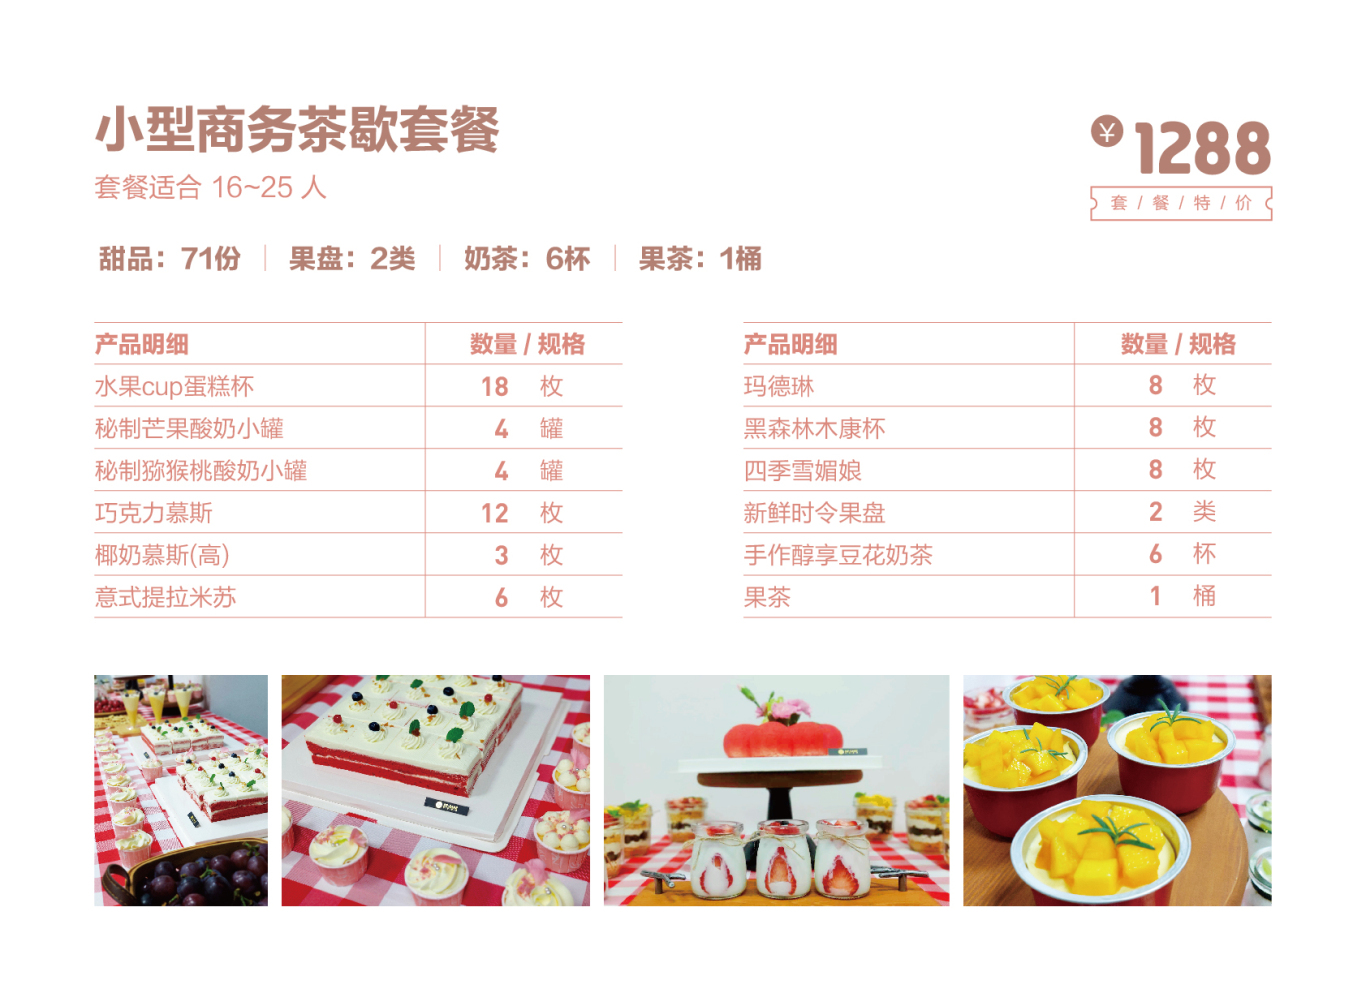 DZ蛋糕产品画册设计图42